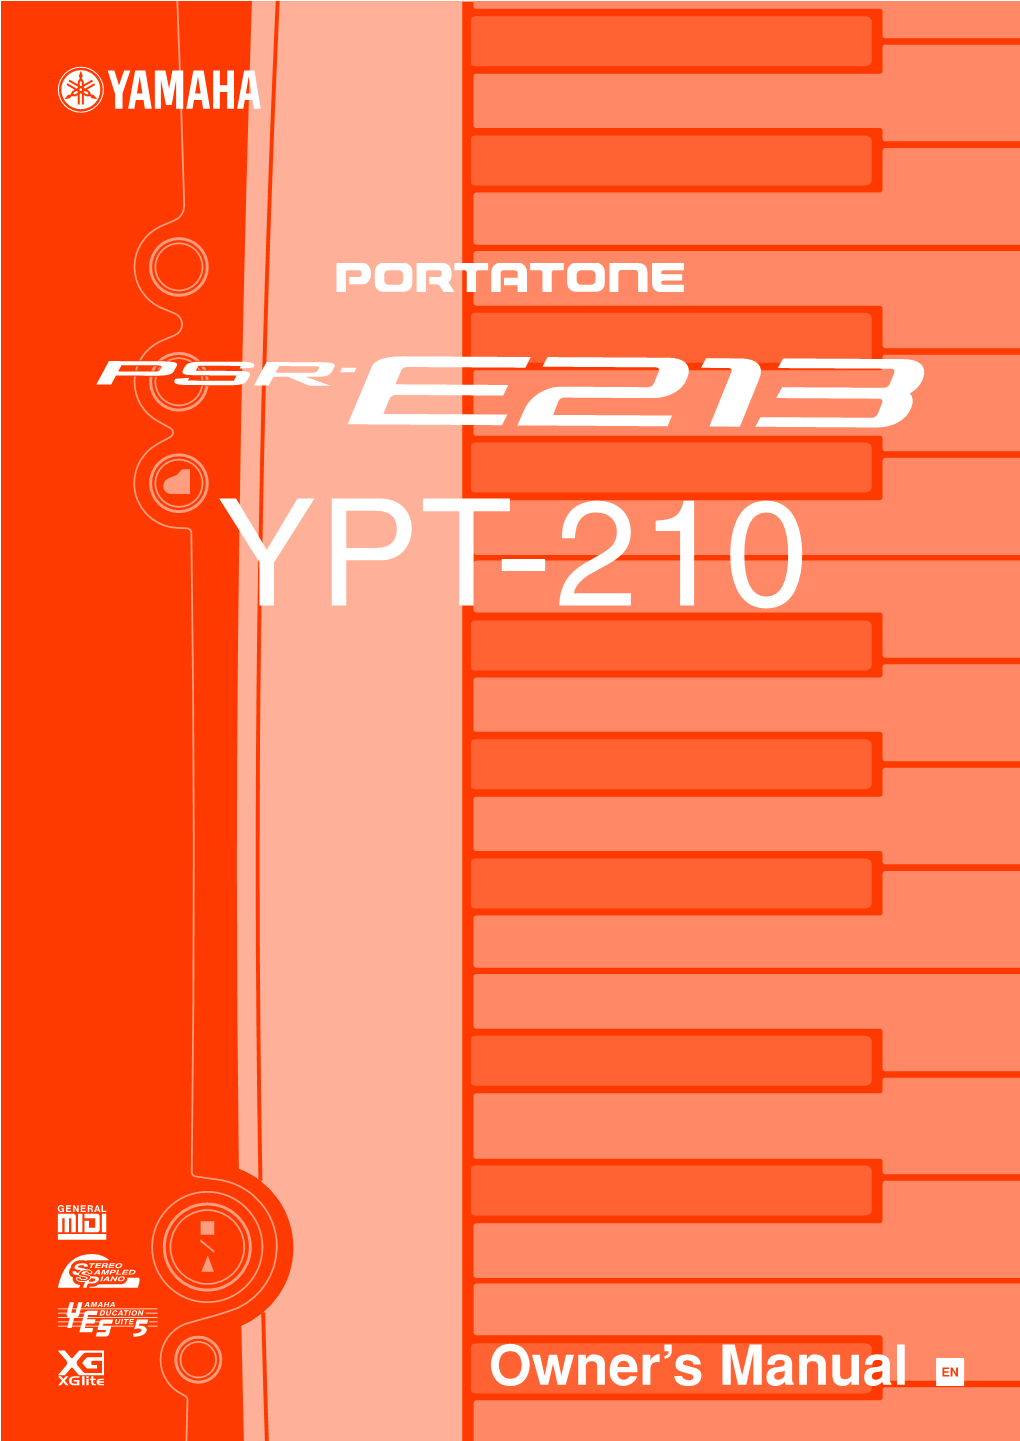 PSR-E213/YPT-210 Owner's Manual